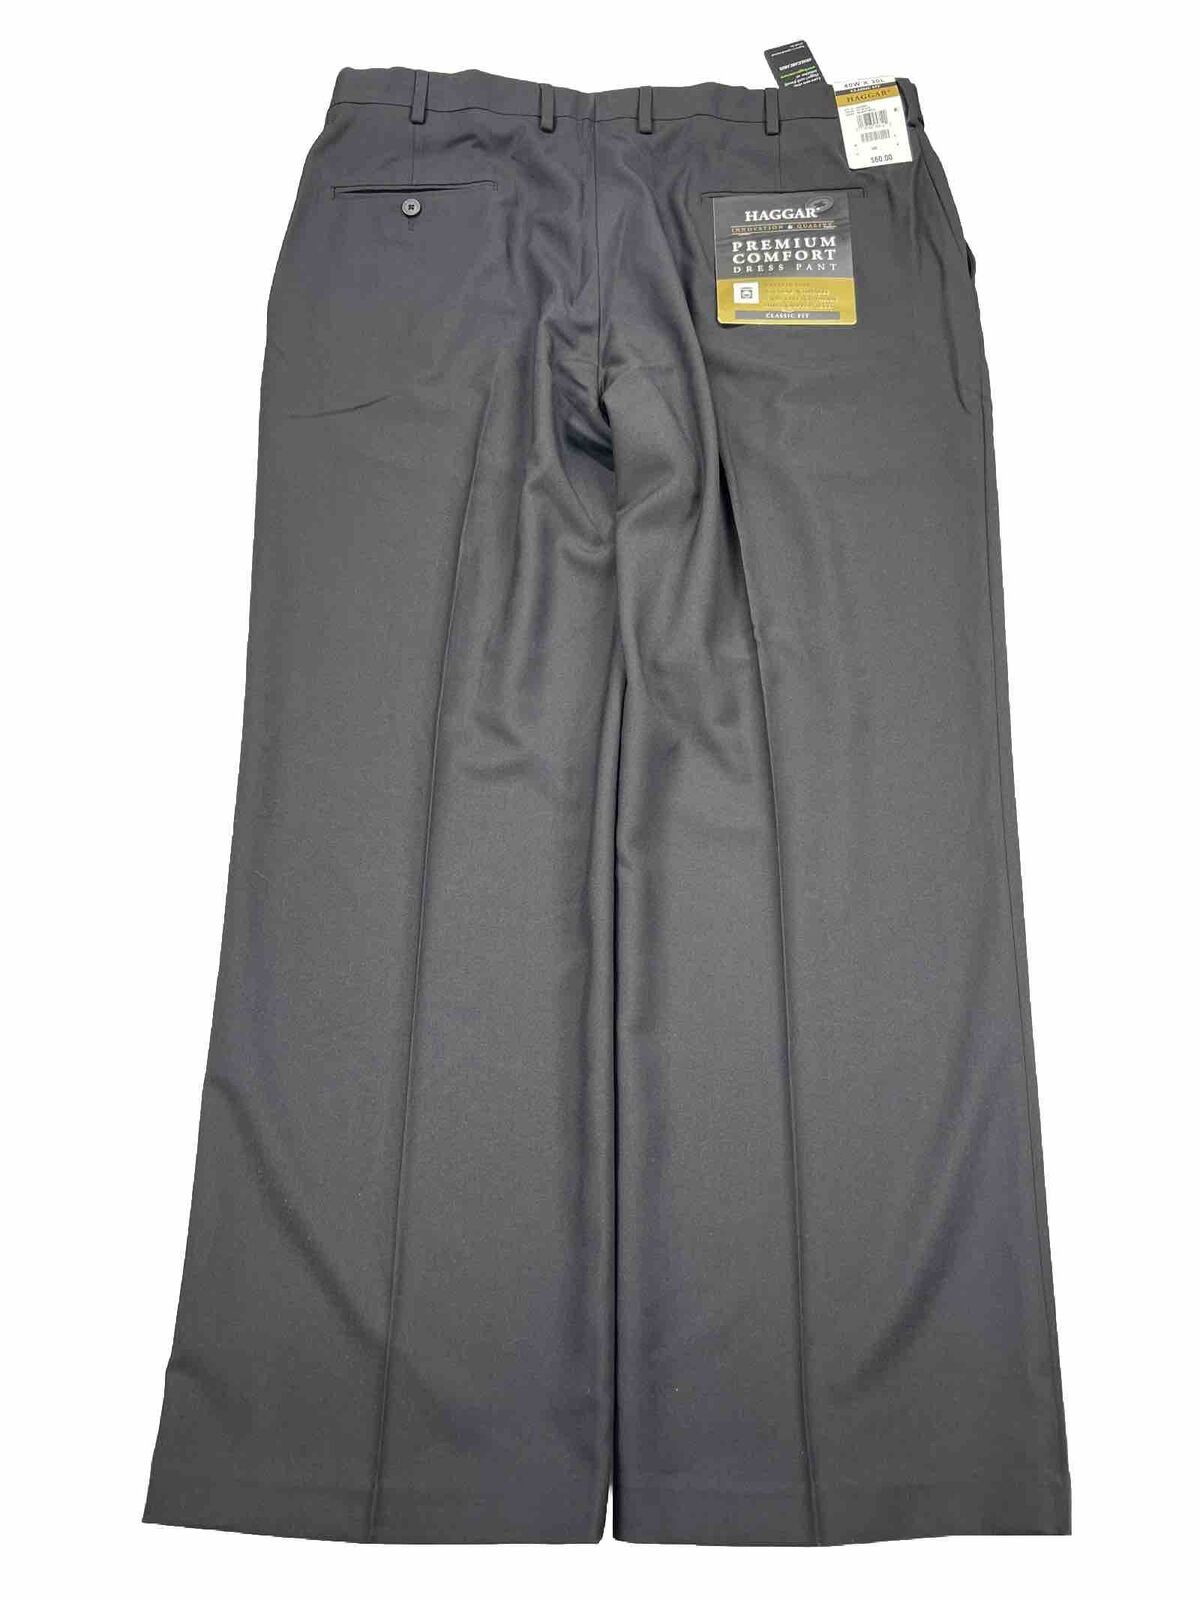 NEW Haggar Men's Black Classic Fit Flat Front Dress Pants - 40x30